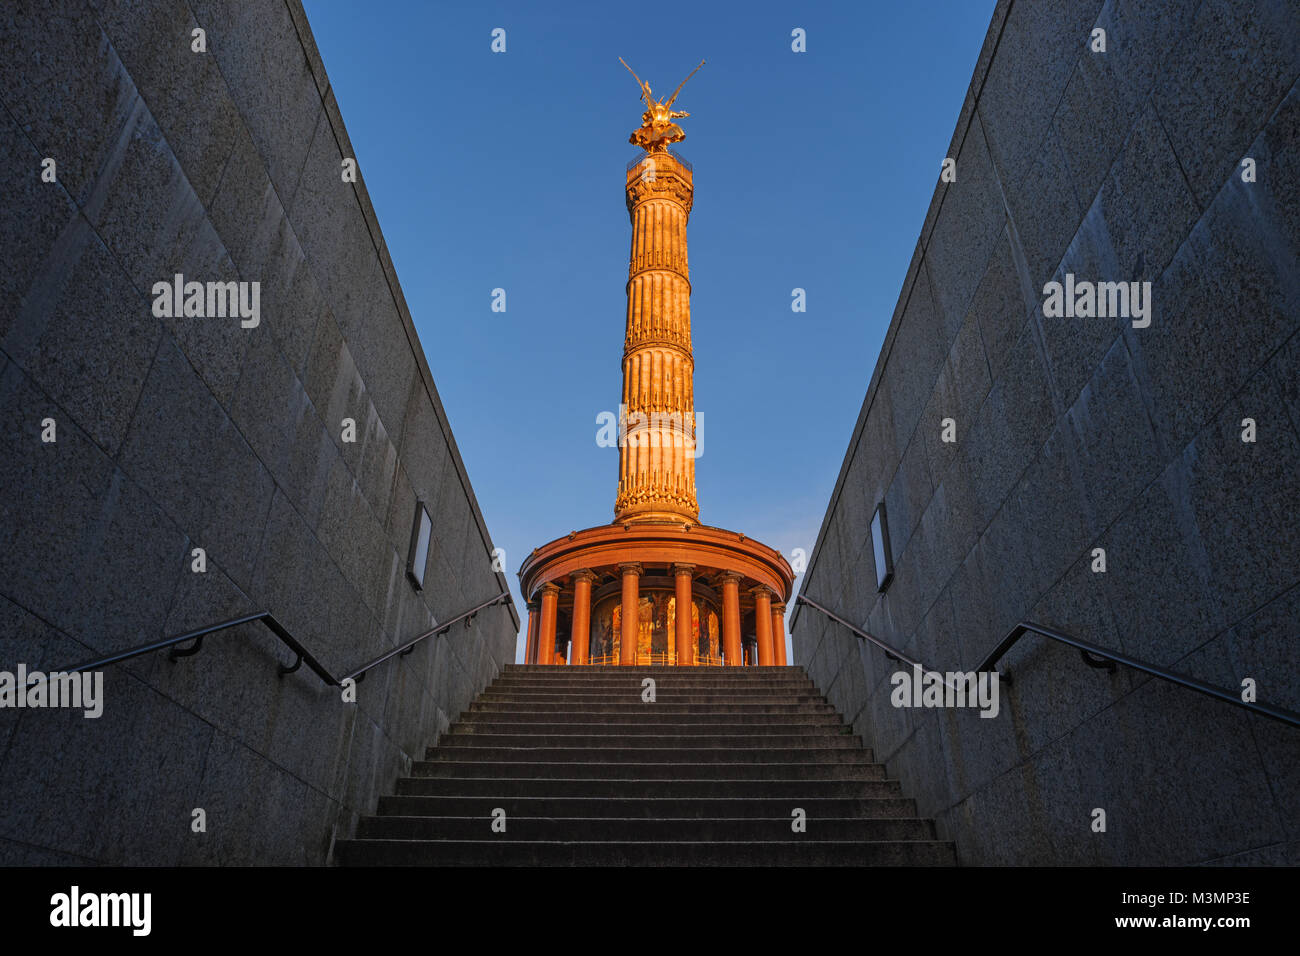 La columna de la victoria, Goldelse, Berlín, Alemania, Europa. Monumento Siegessaule, Golden angel en el parque Tiergarten. Siegessaeule, Golden Lizzy. Hito popular Foto de stock